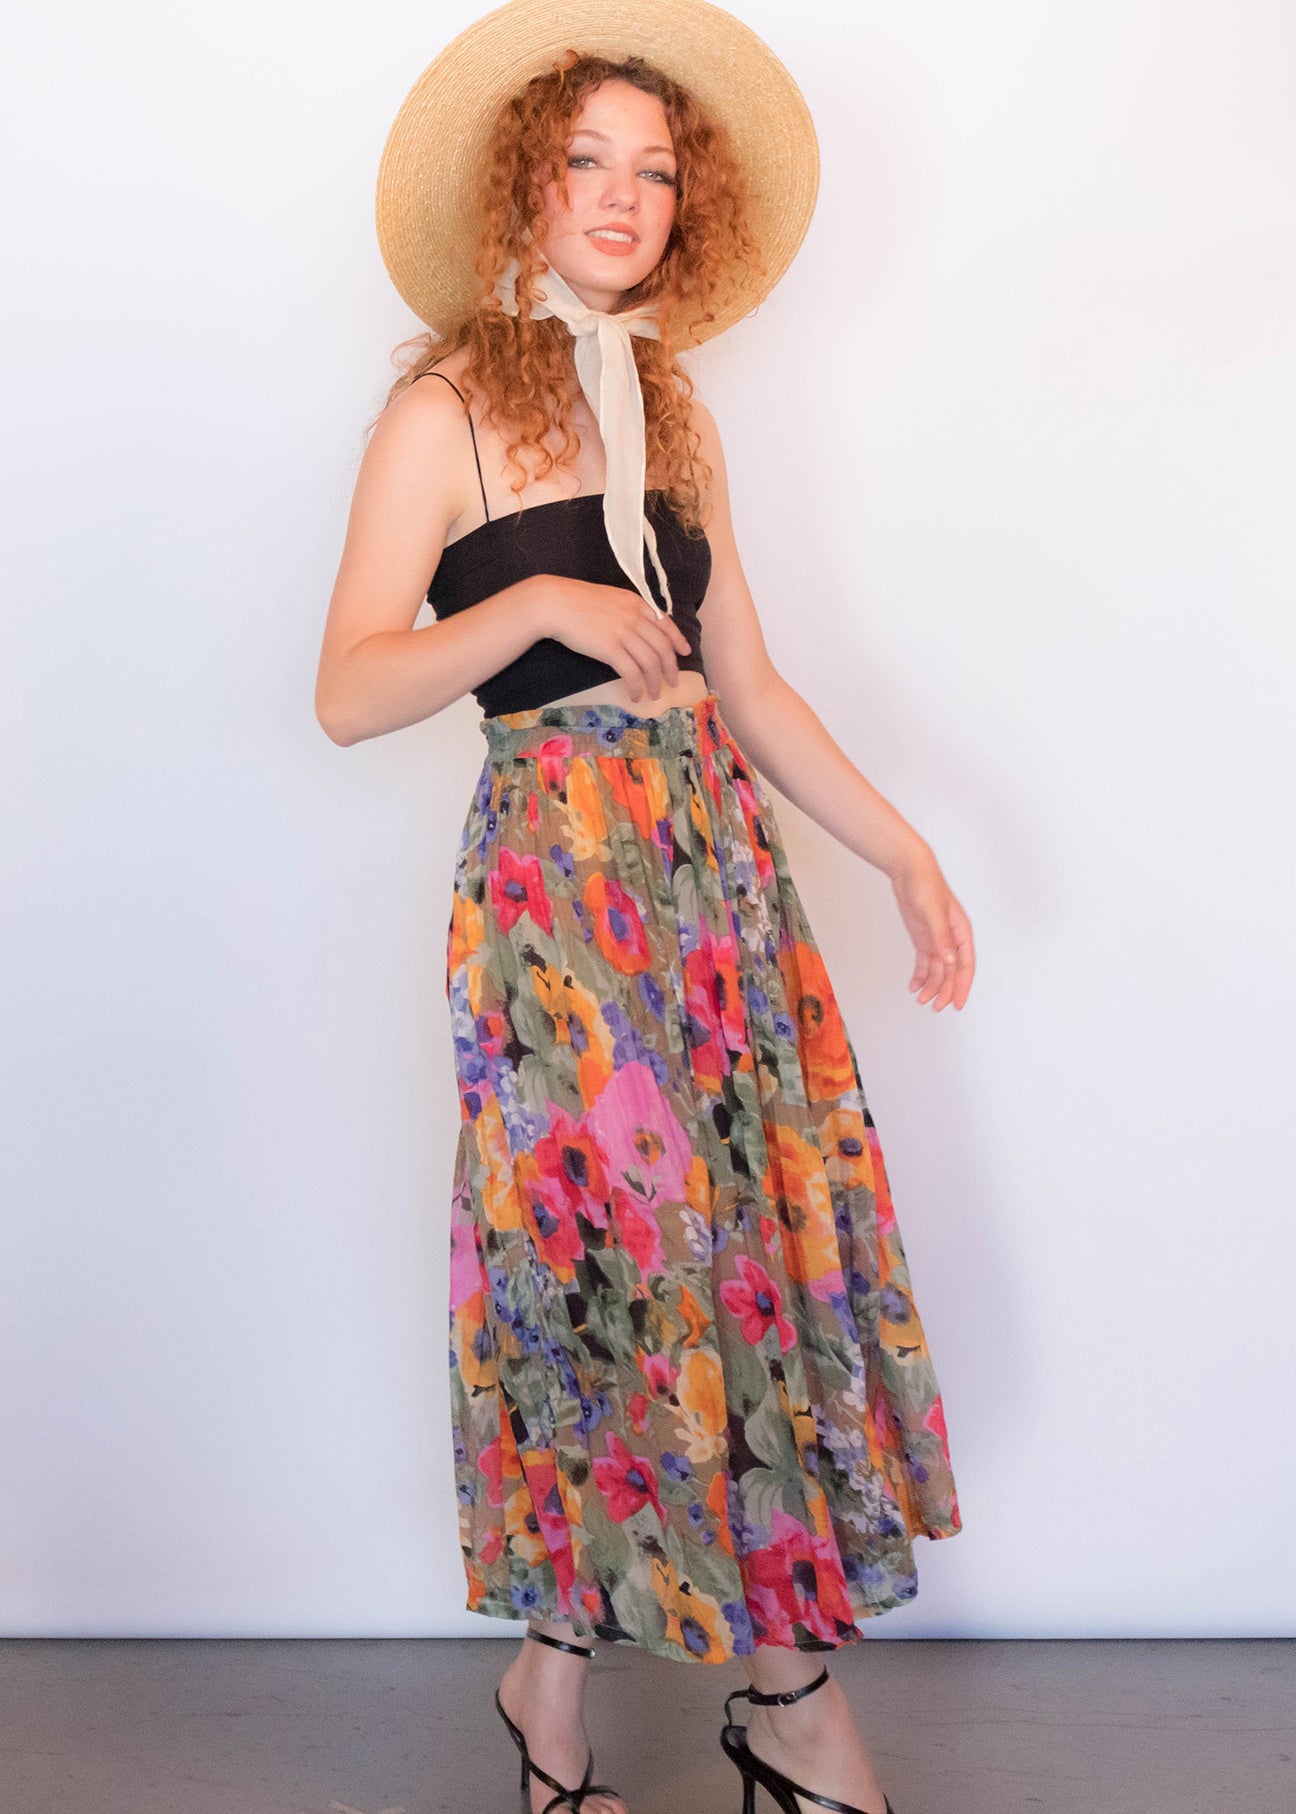 80s Floral Sheer Skirt